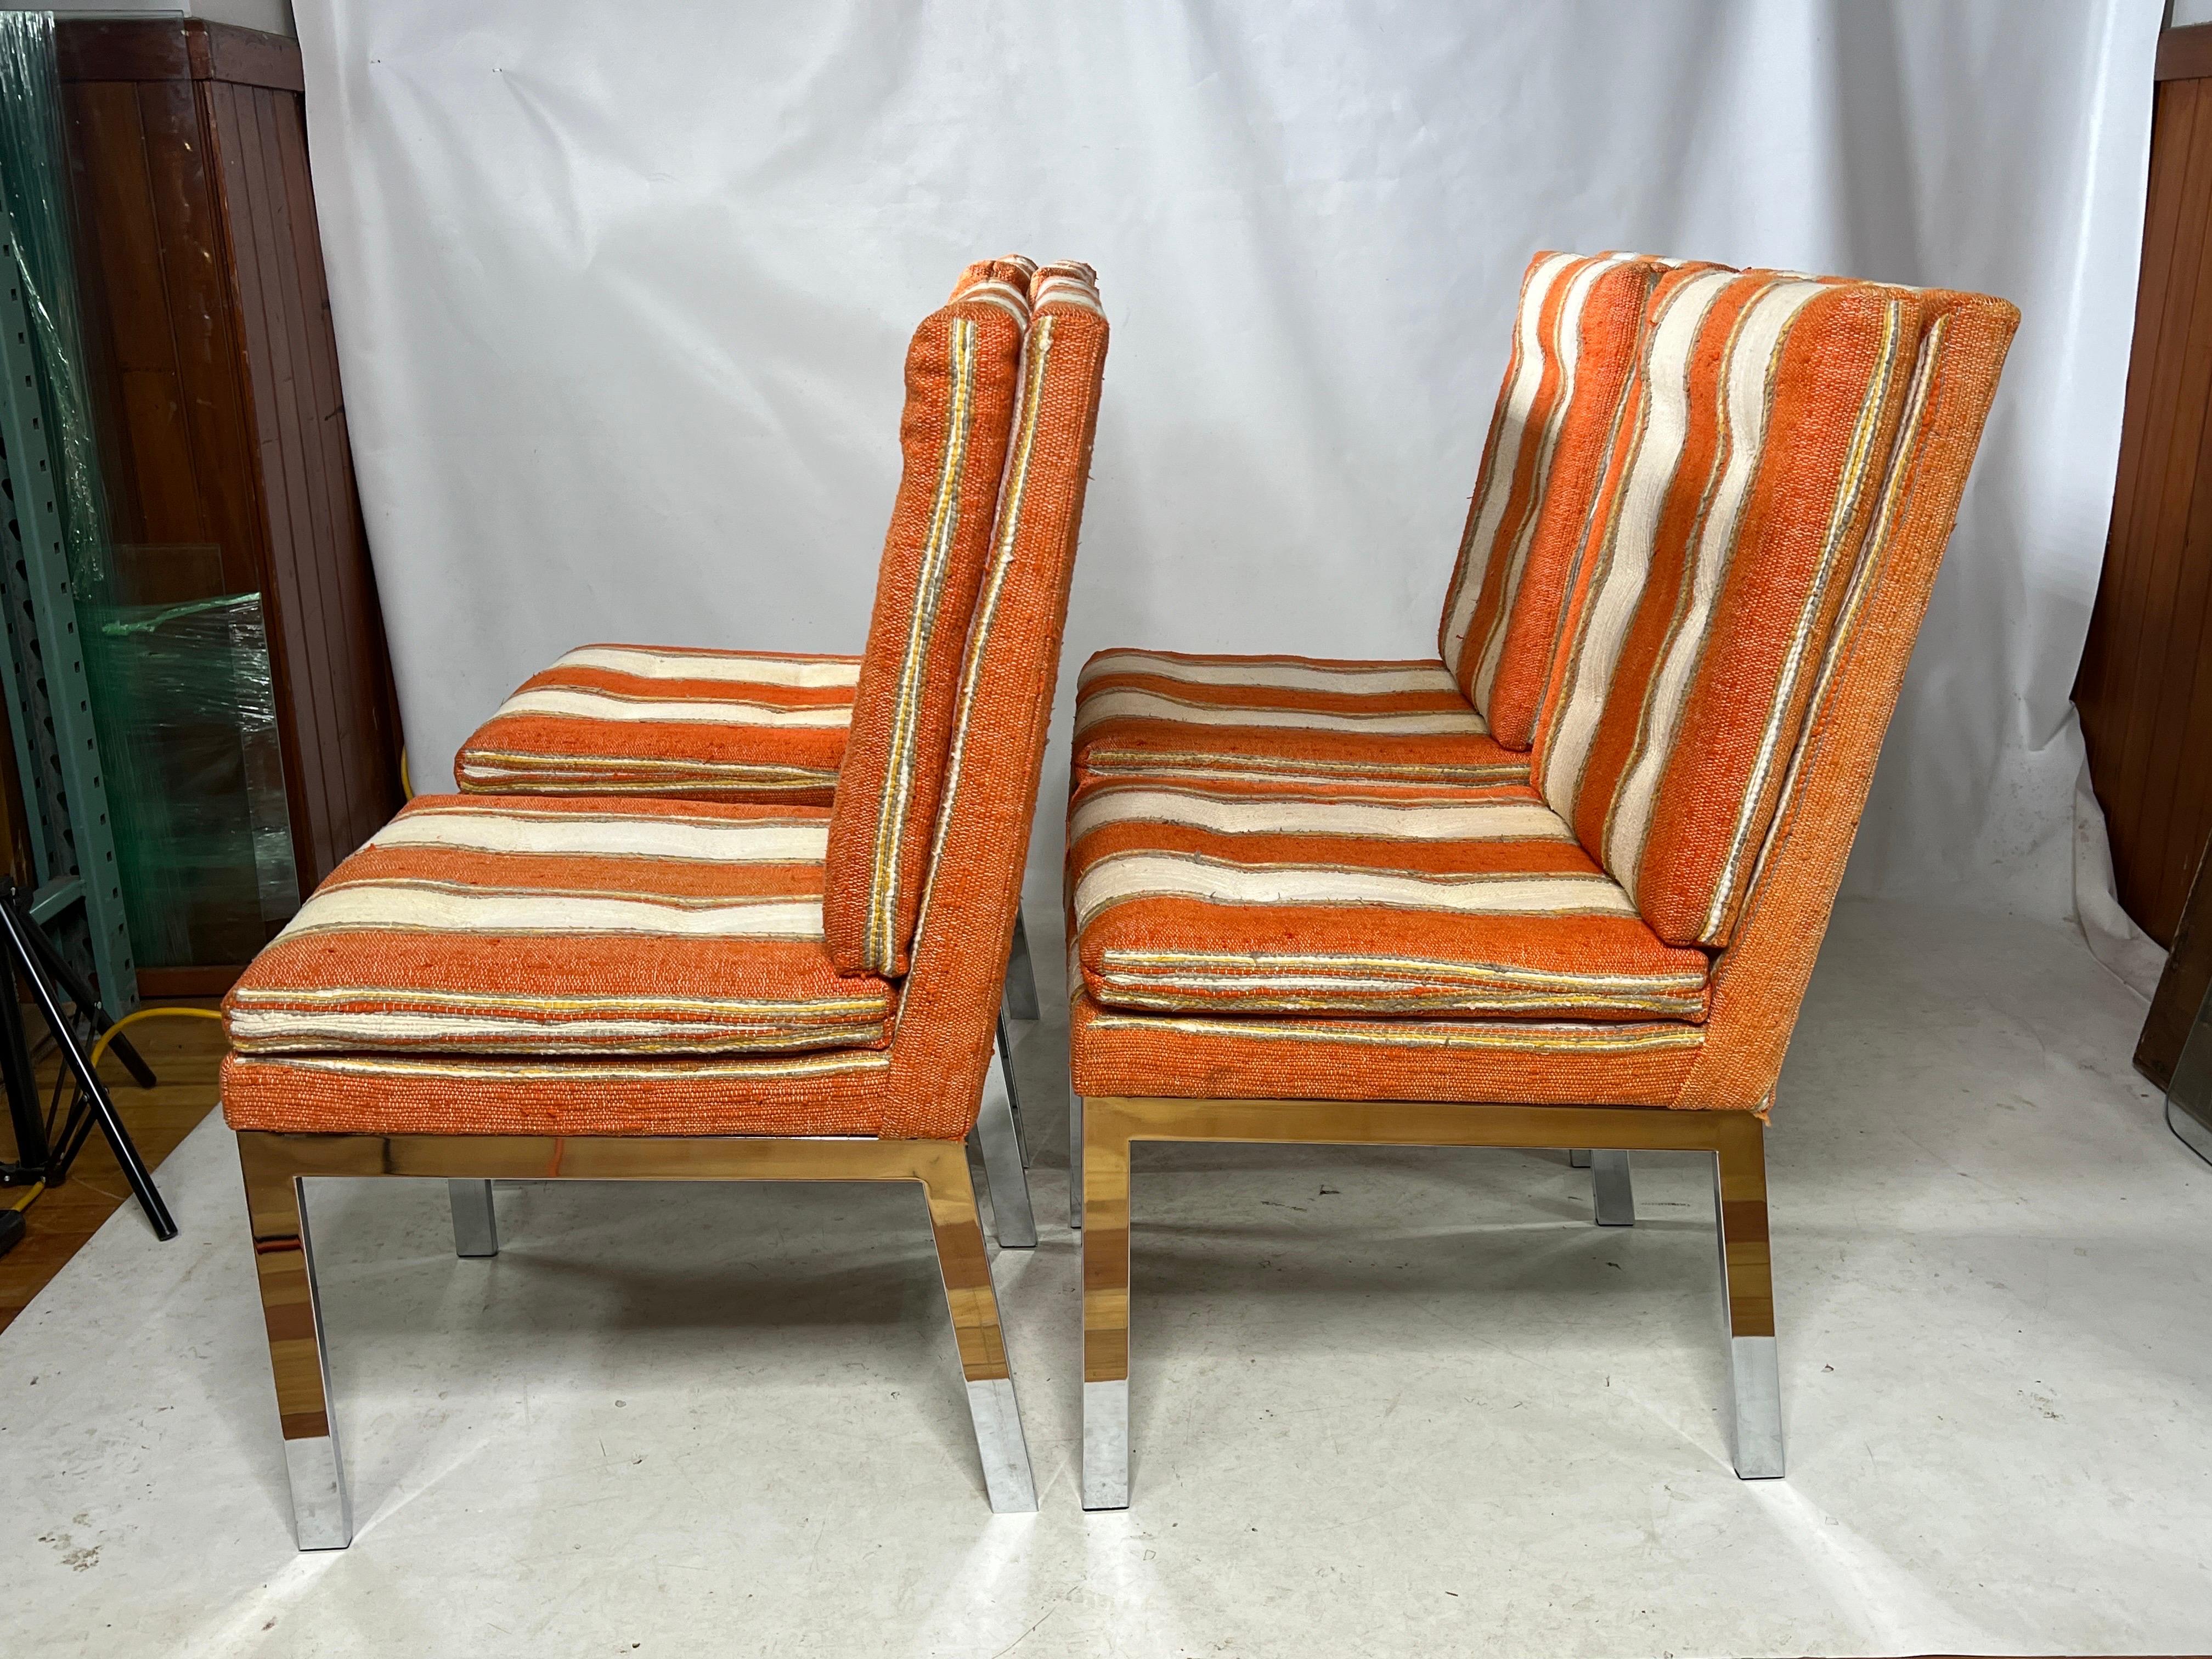 Voici un fantastique ensemble de quatre chaises de salle à manger Parsons vintage qui exsudent à la fois le style et la qualité. Ces chaises ne sont pas seulement très à la mode, elles sont aussi impeccablement fabriquées